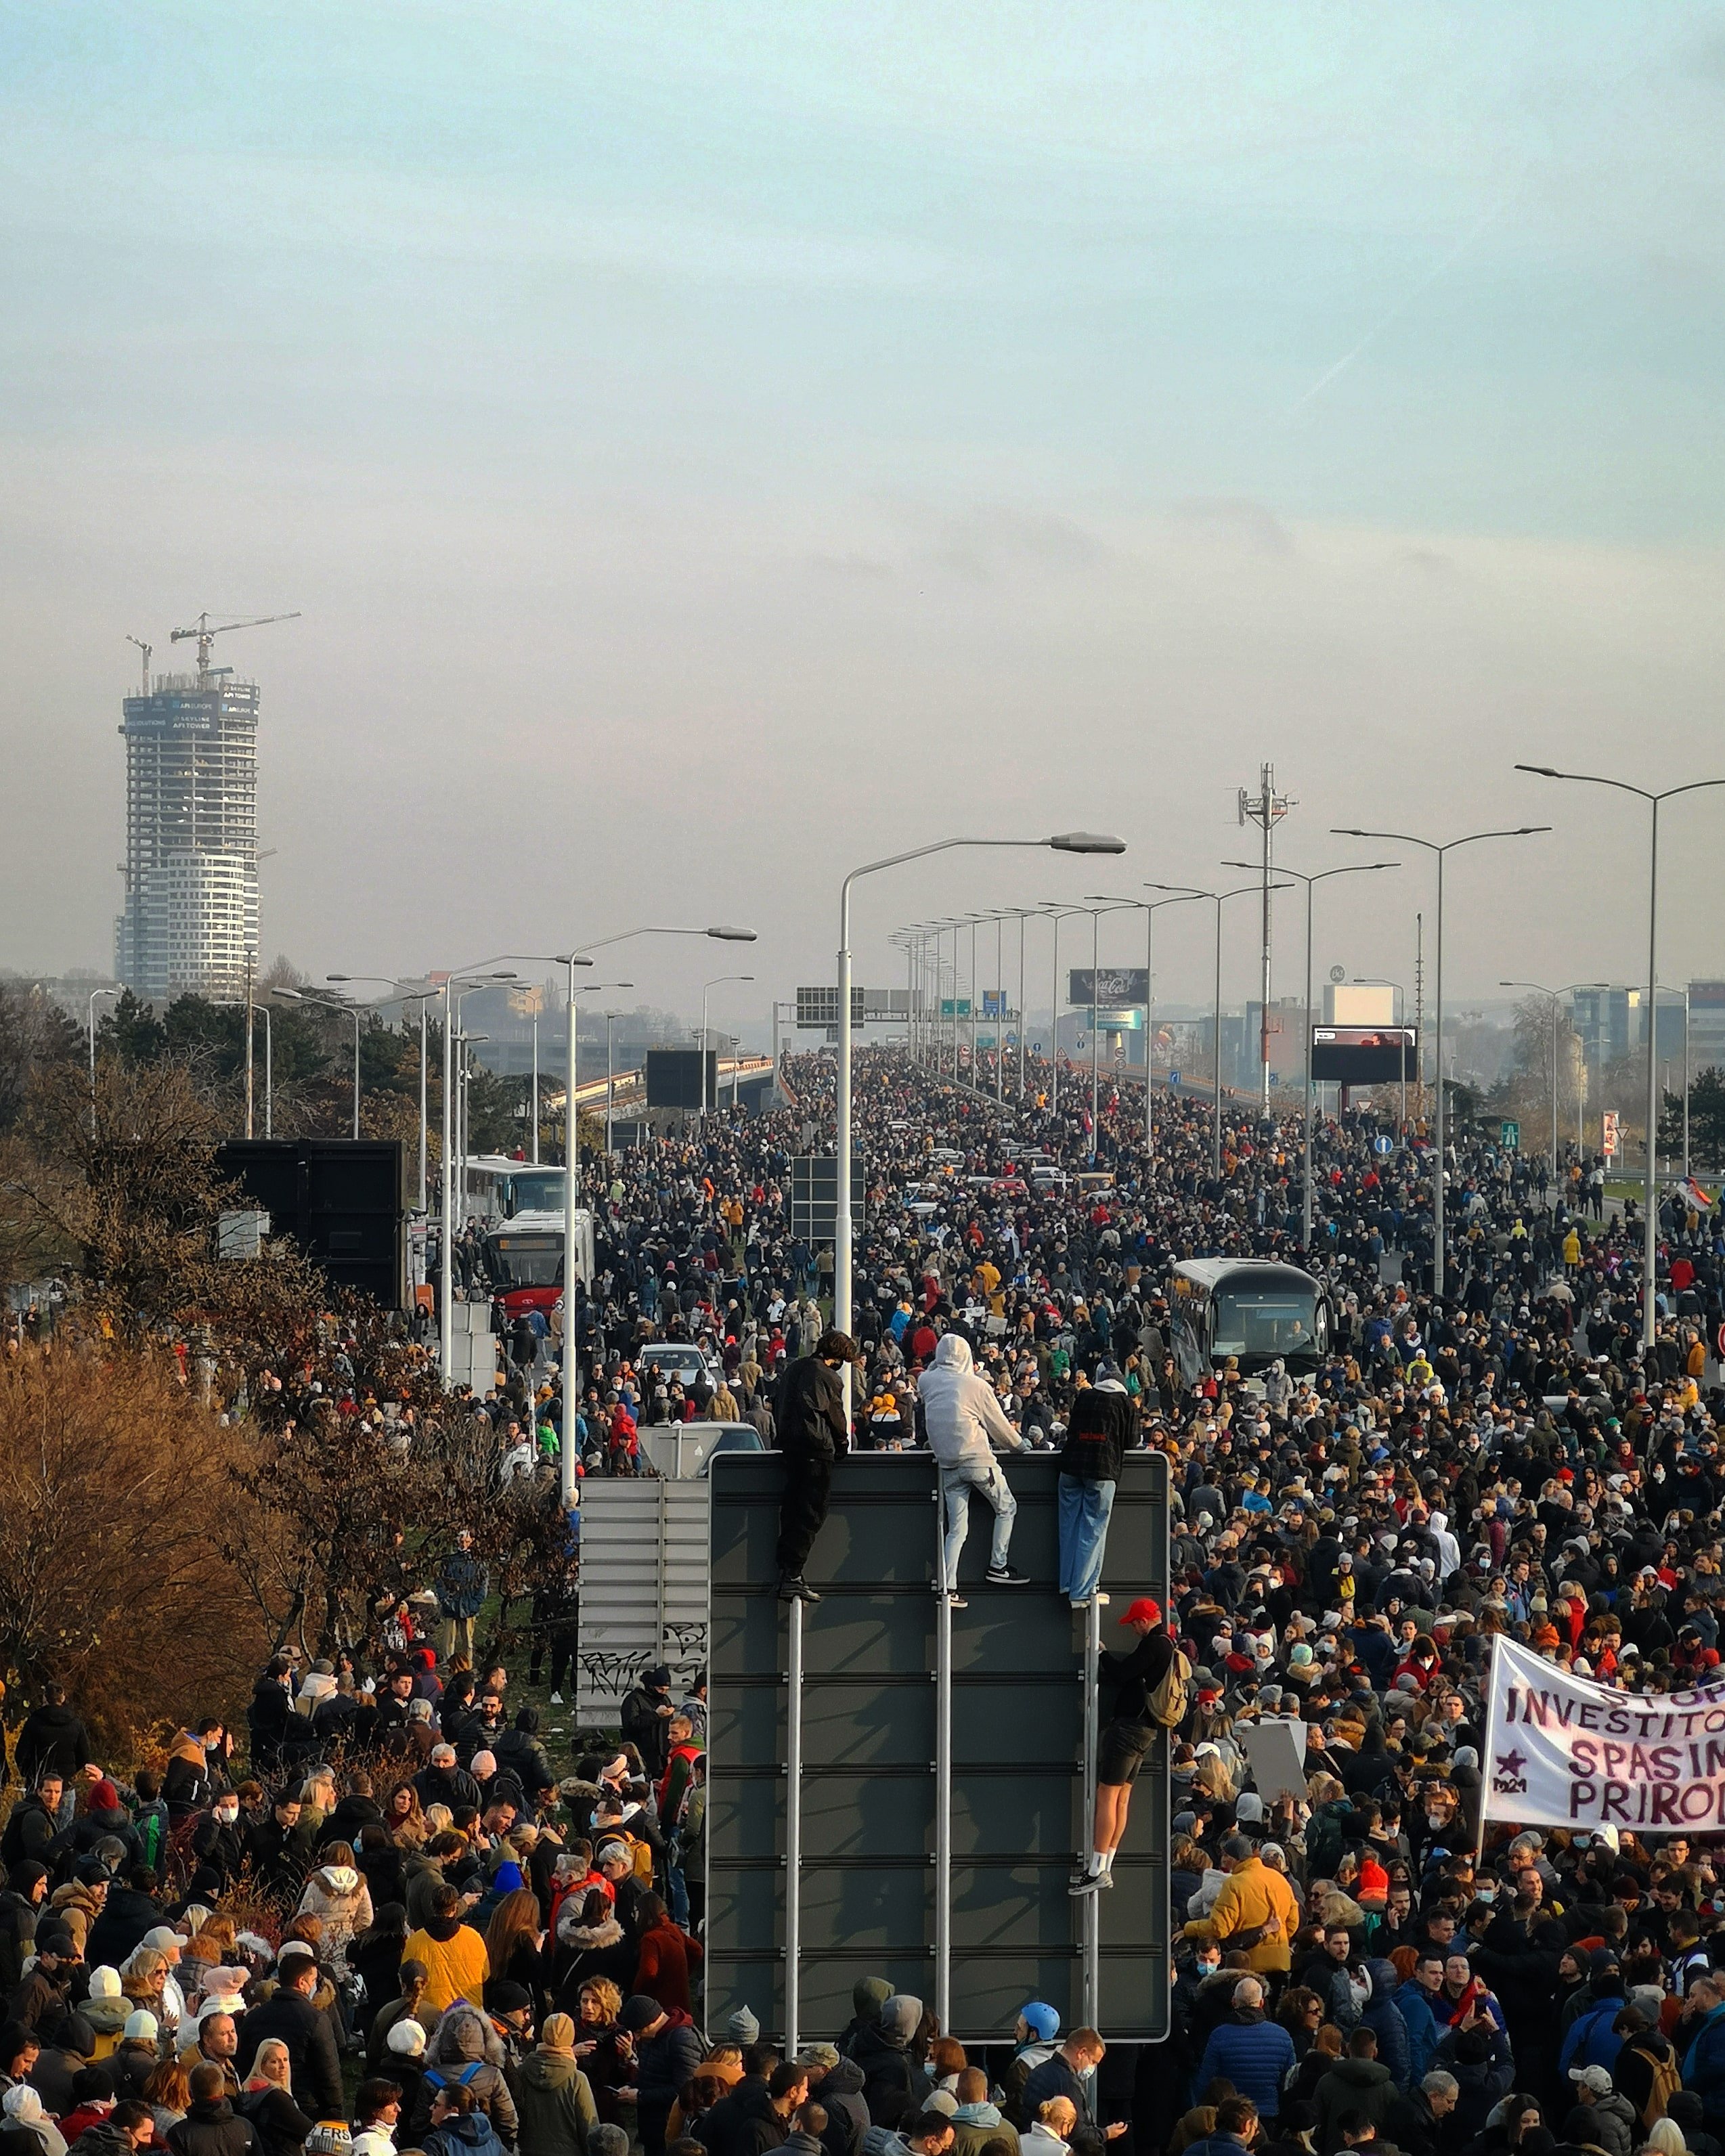 Protesti, Novak Đoković, ekologija: Kako je nastala fotografija koja je podeljena 45.000 puta